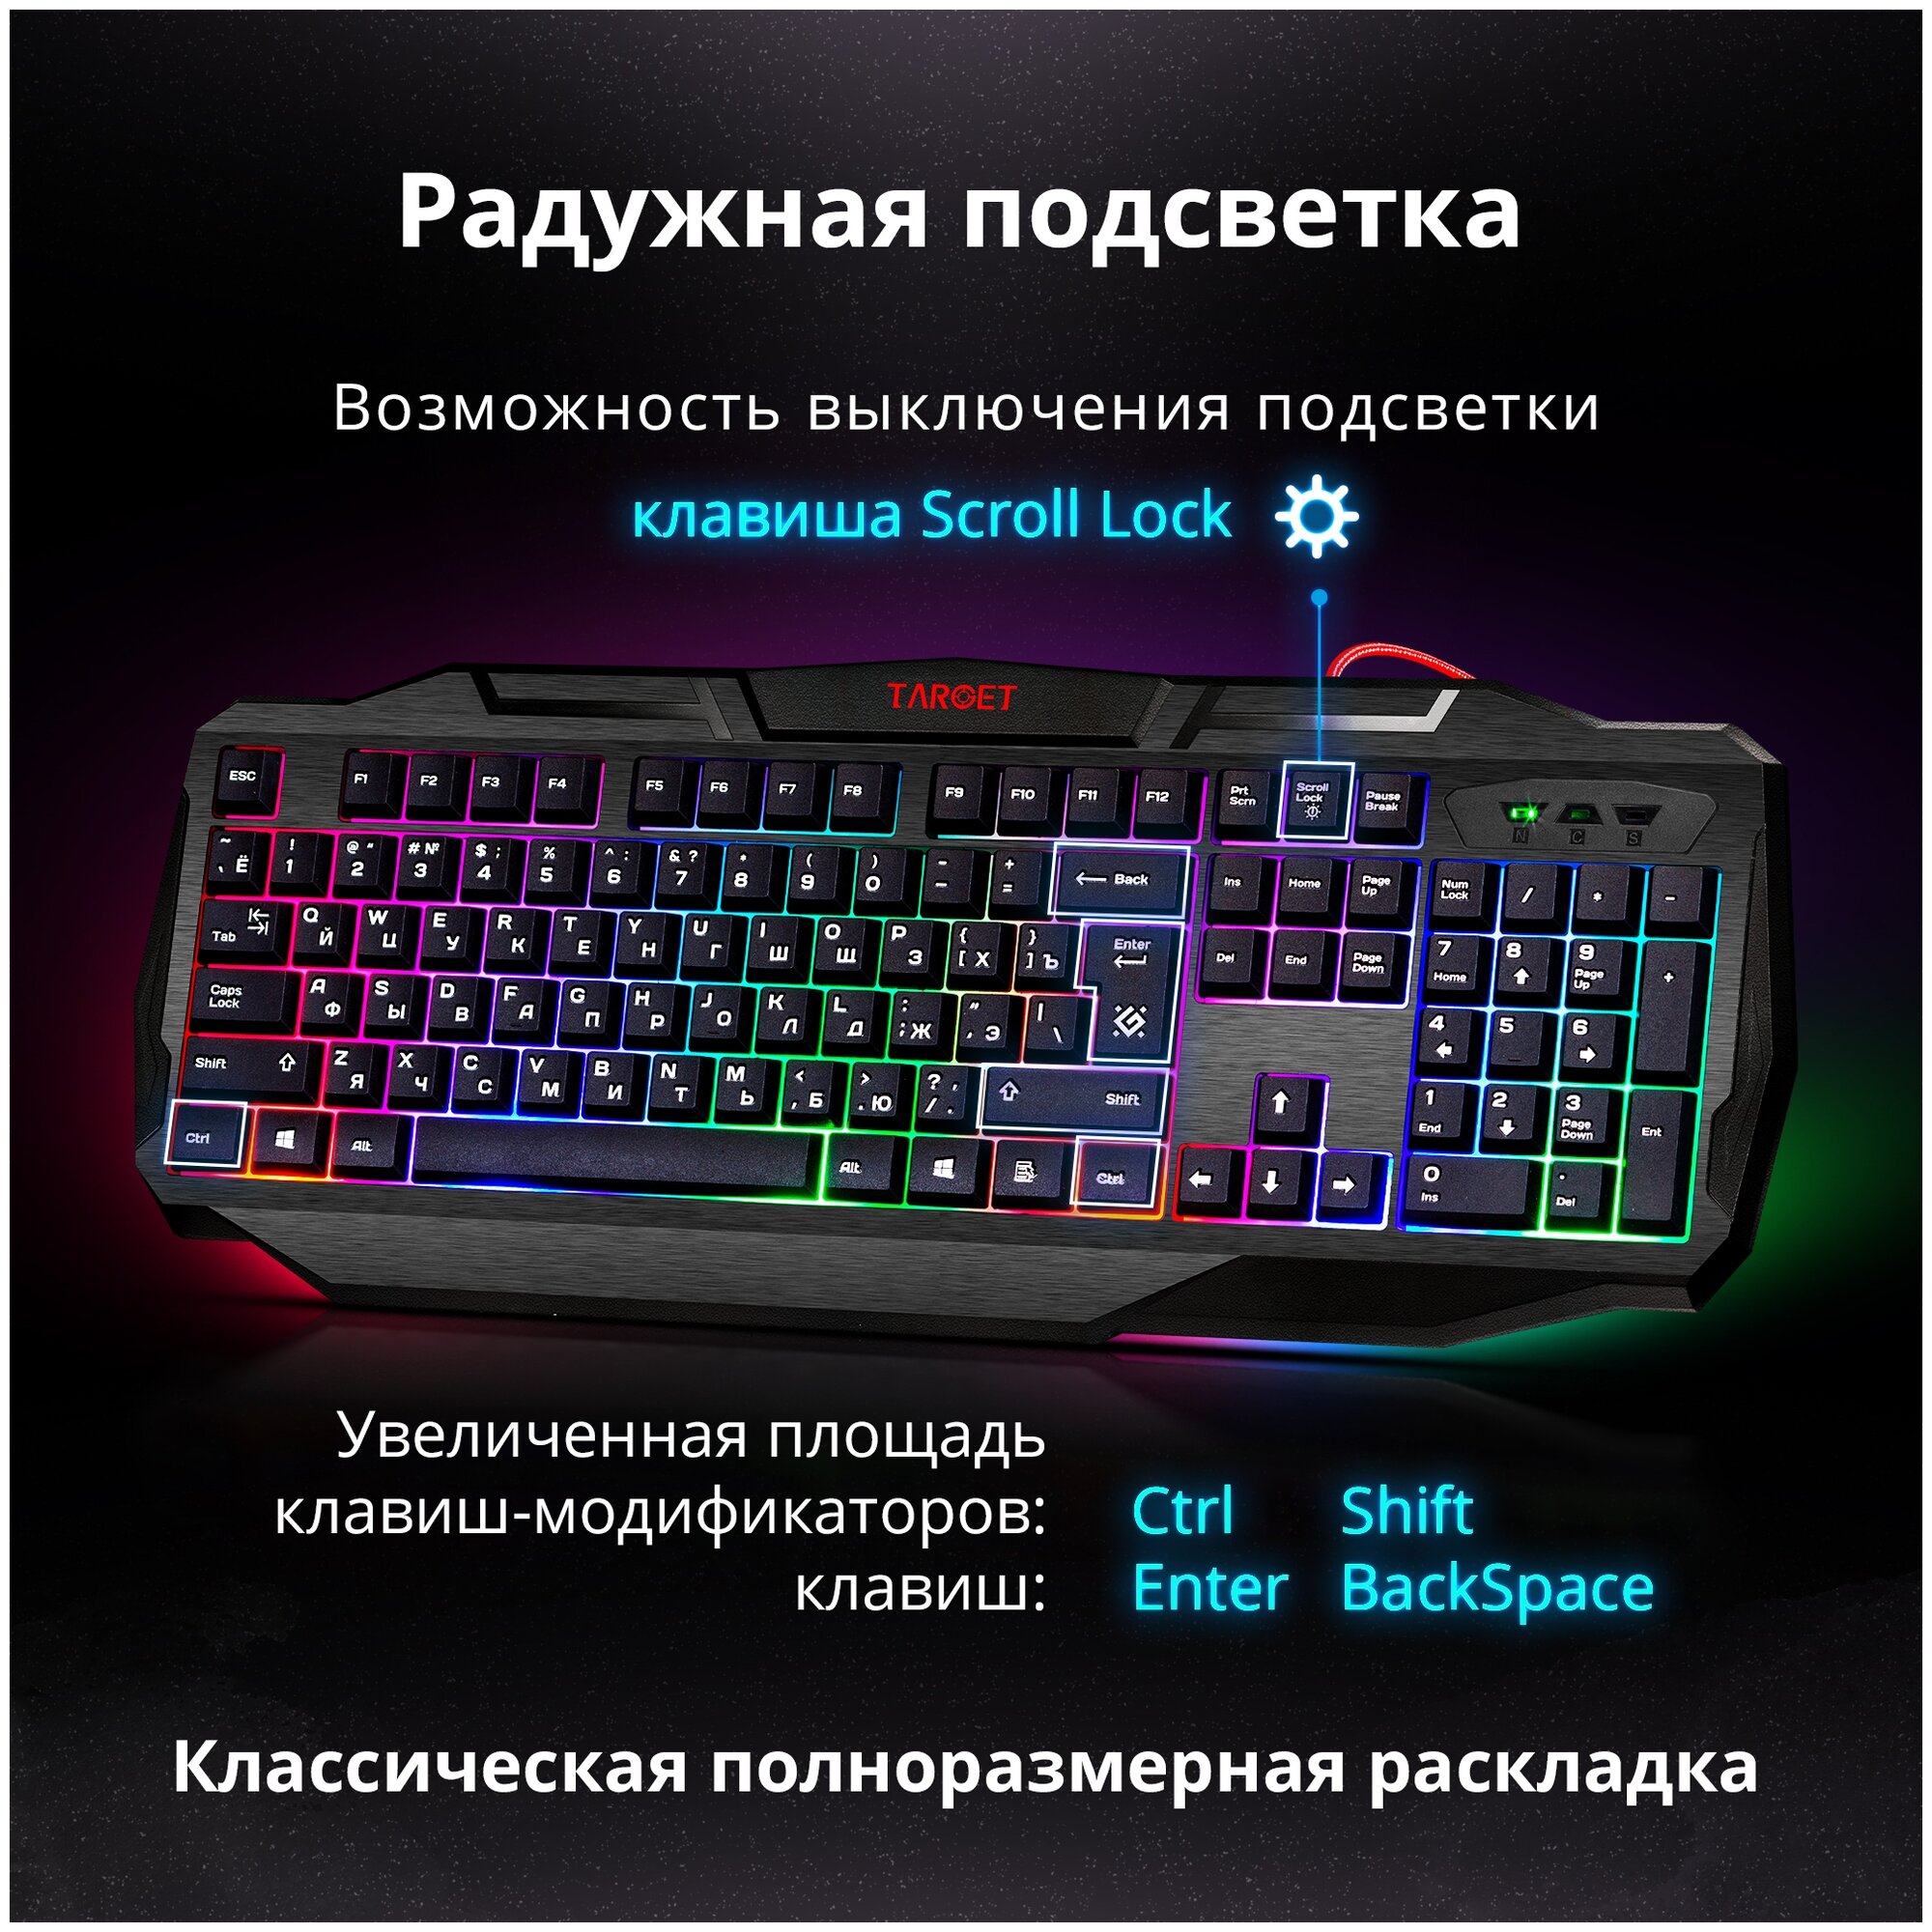 Игровой набор Defender Target MKP-350 мышь+клавиатура+гарнитура+коврик